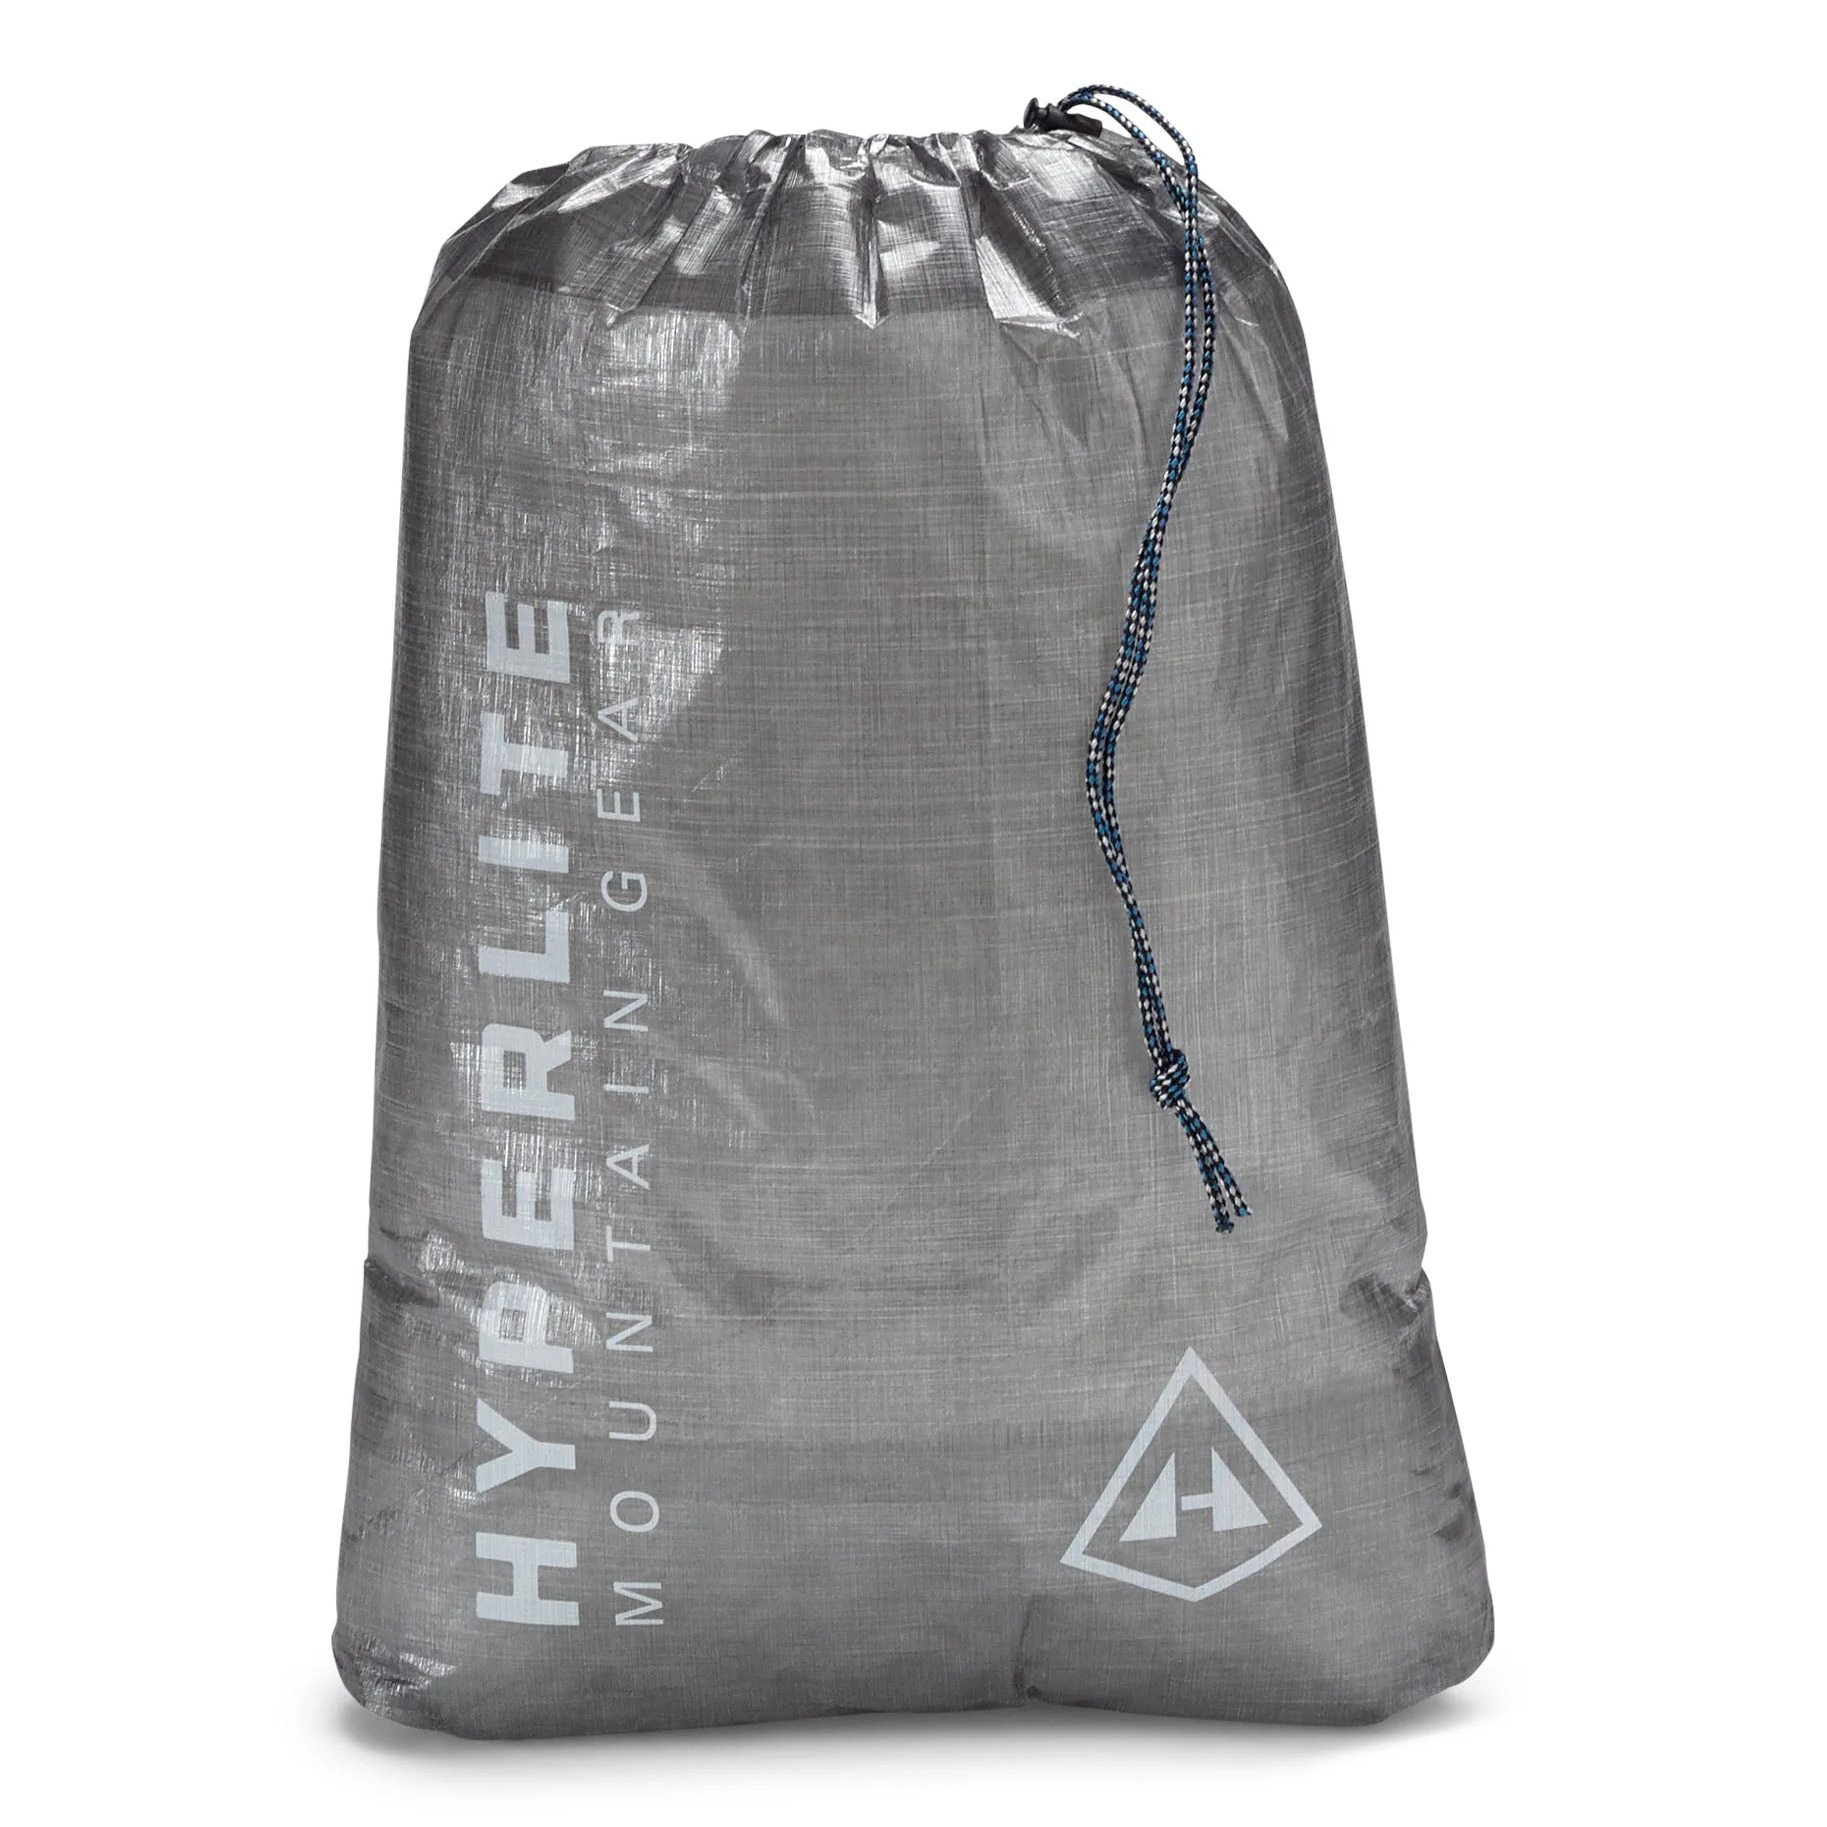 Hyperlite Mountain Gear Drawstring Stuff Sack - Grey | Packing